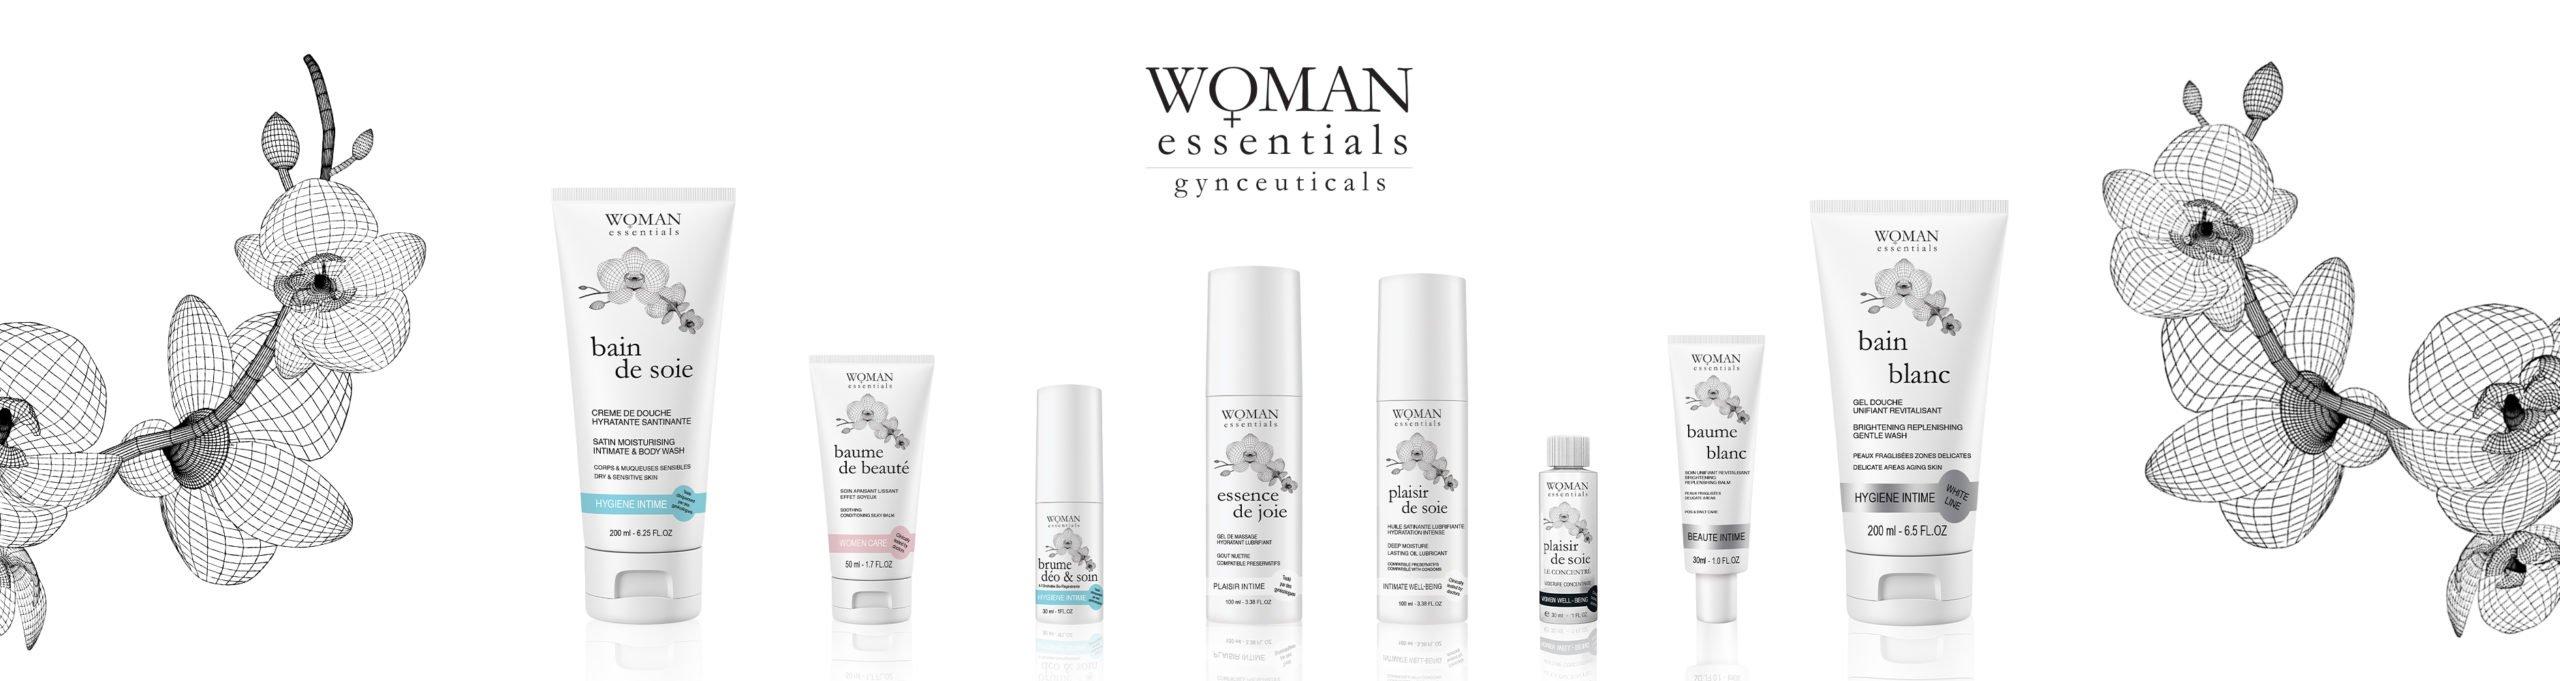 Một số sản phẩm trong bộ dưỡng da vùng kín khác của Woman Essentials (Ảnh: Internet)